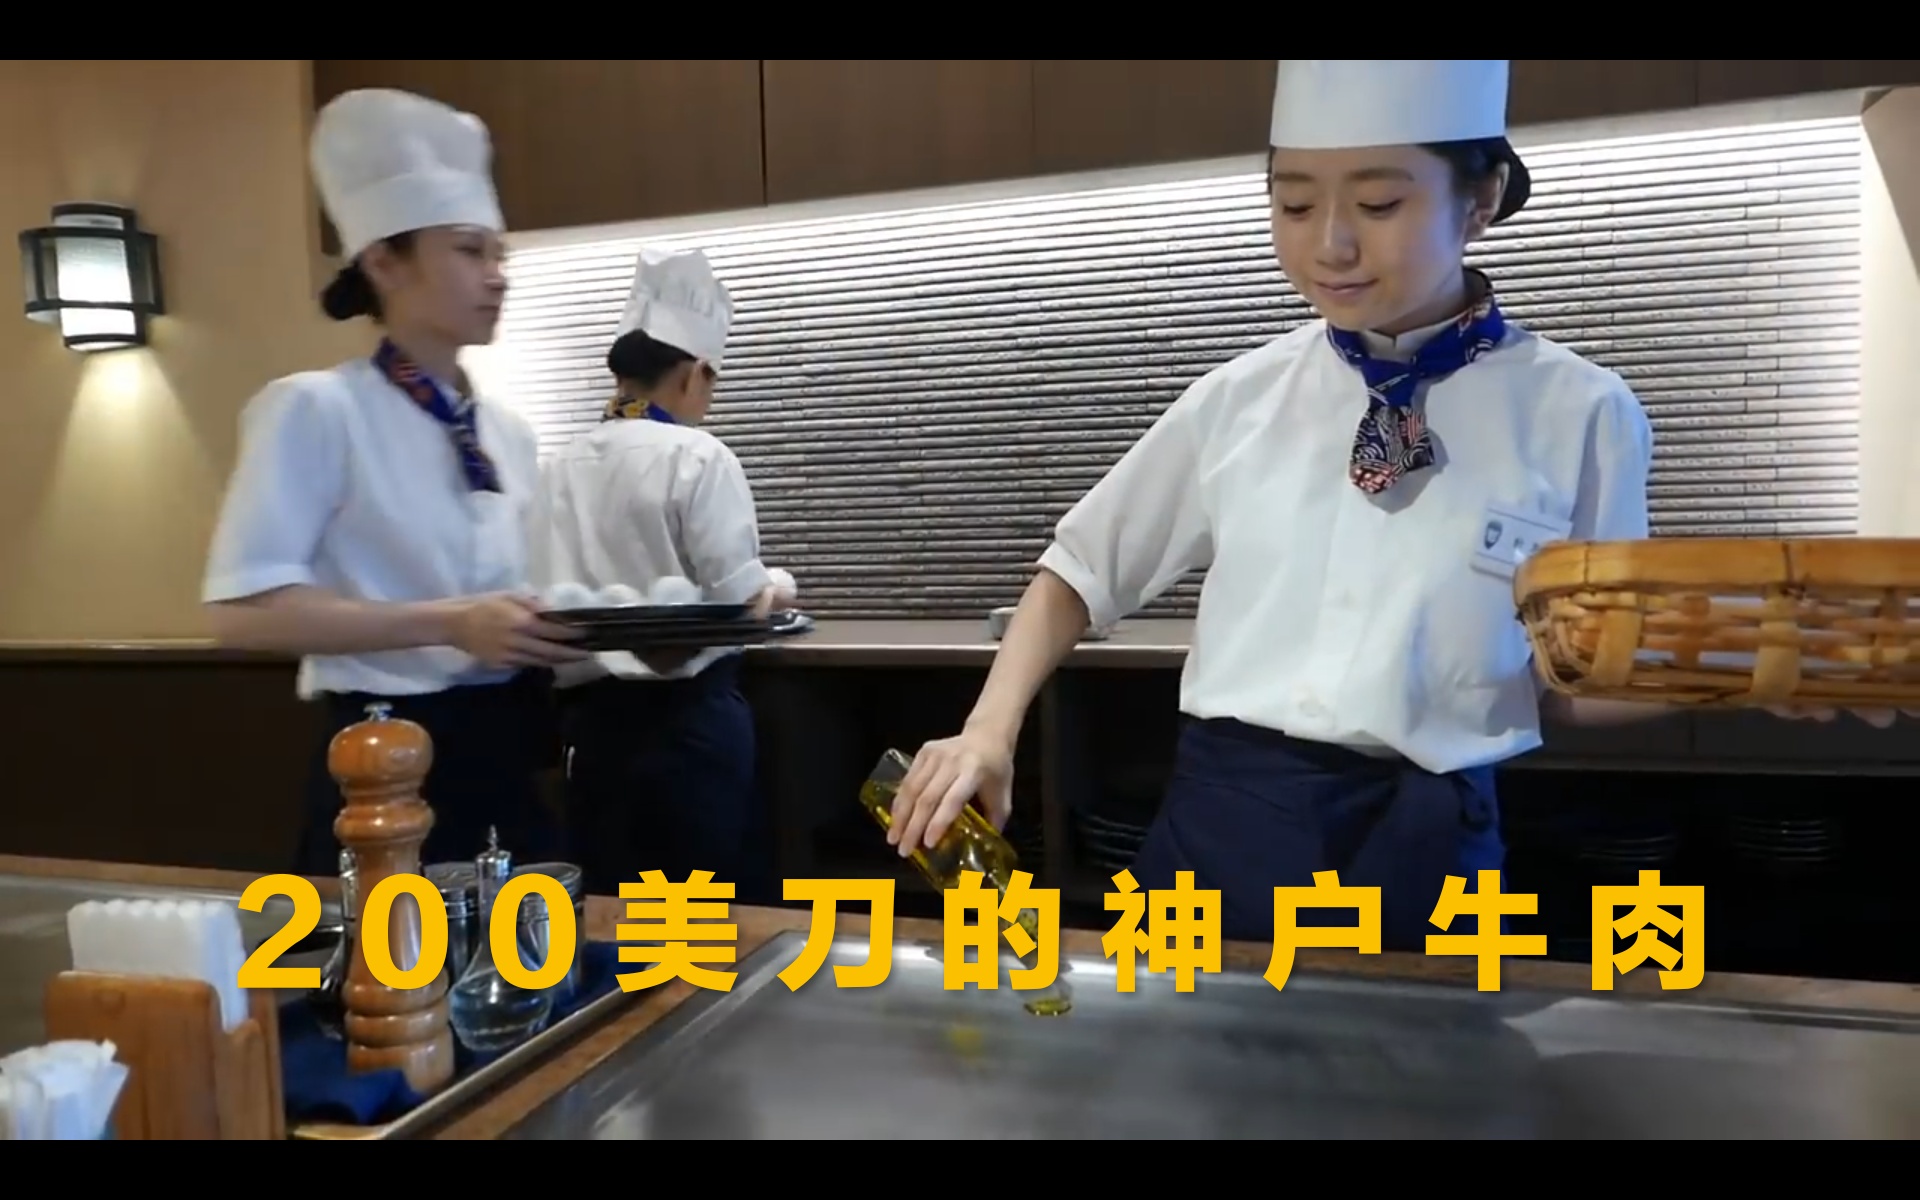 美女厨师铁板烧现做200美刀的神户牛肉。